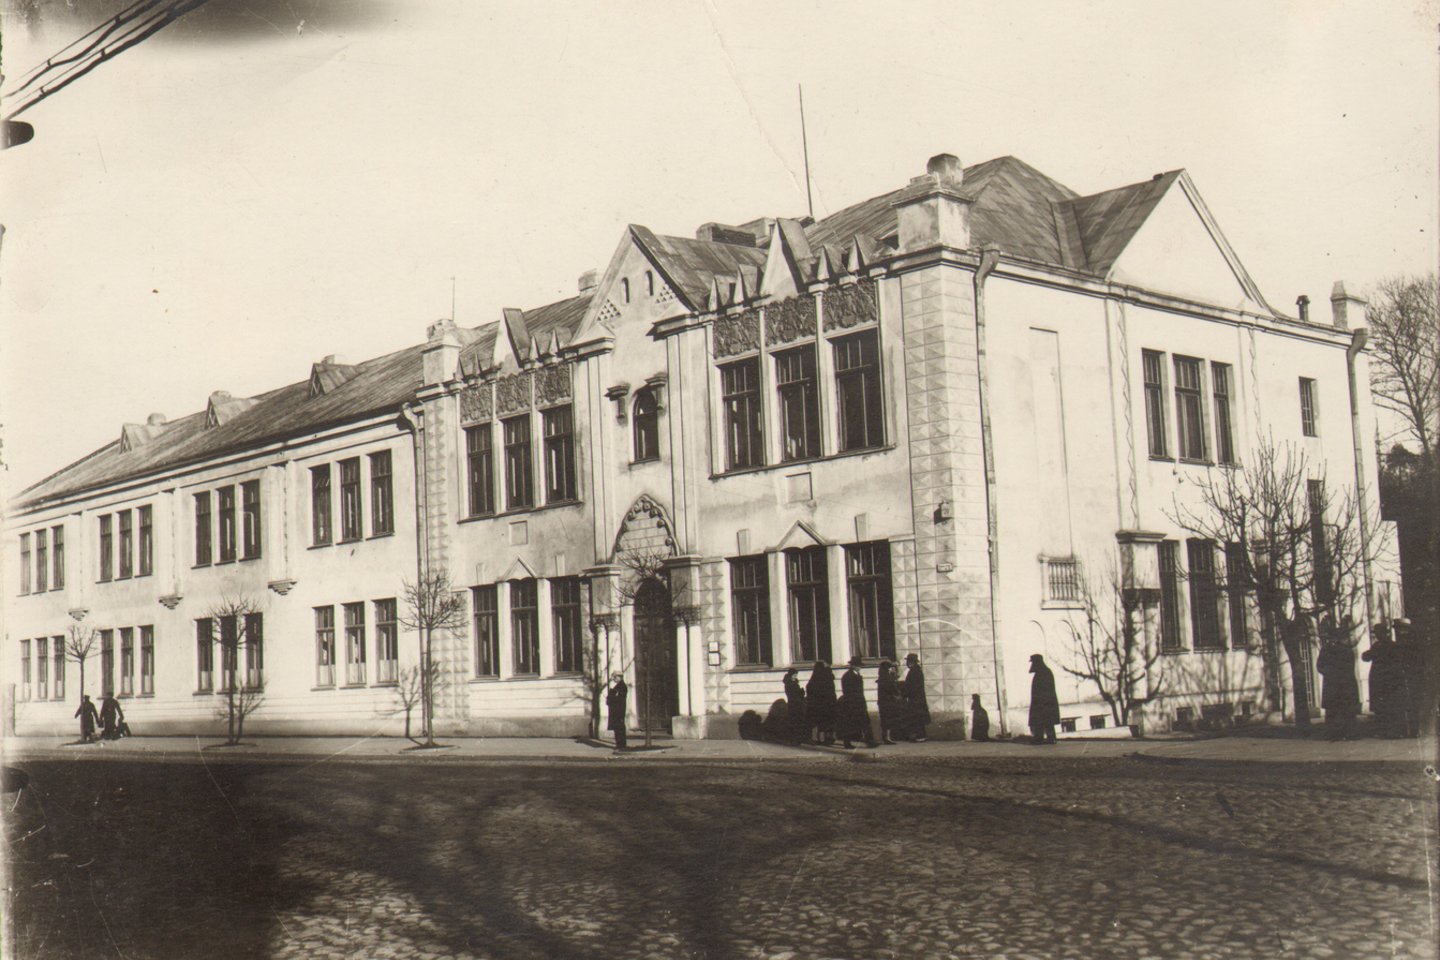  Rusų gimnazijos pastatas Vytauto prospekte 44, kuriame dabar įsikūręs Kauno pedagogų kvalifikacijos centras, 1925 m.<br> Lietuvos švietimo istorijos muziejaus nuotr.